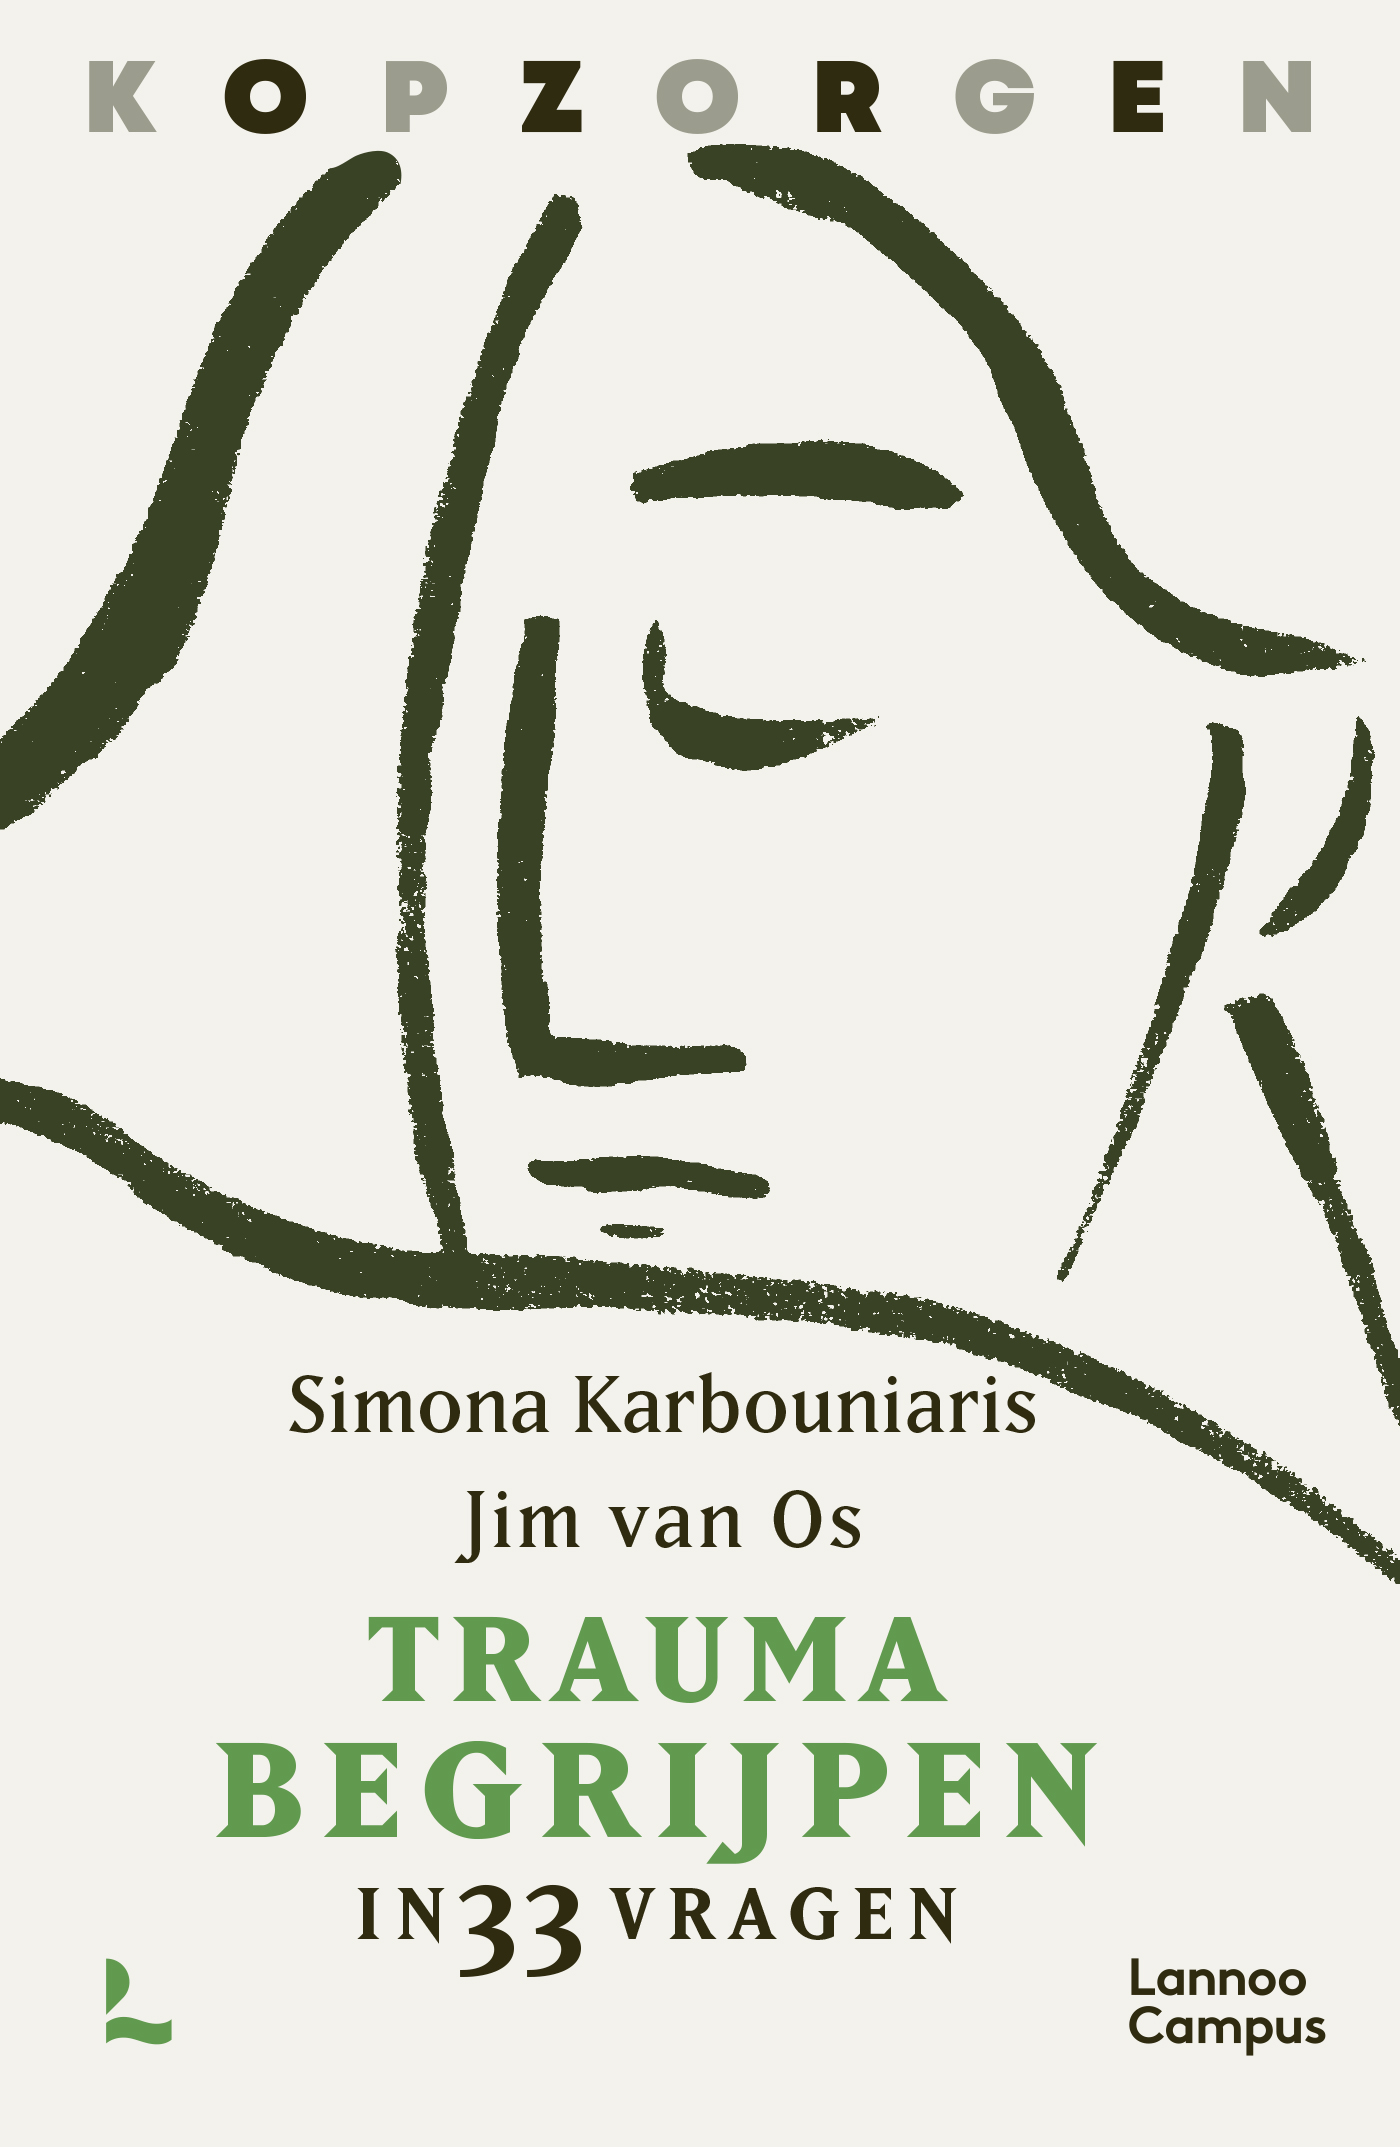 Trauma begrijpen in 33 vragen – Simona Karbouniaris en Jim van Os